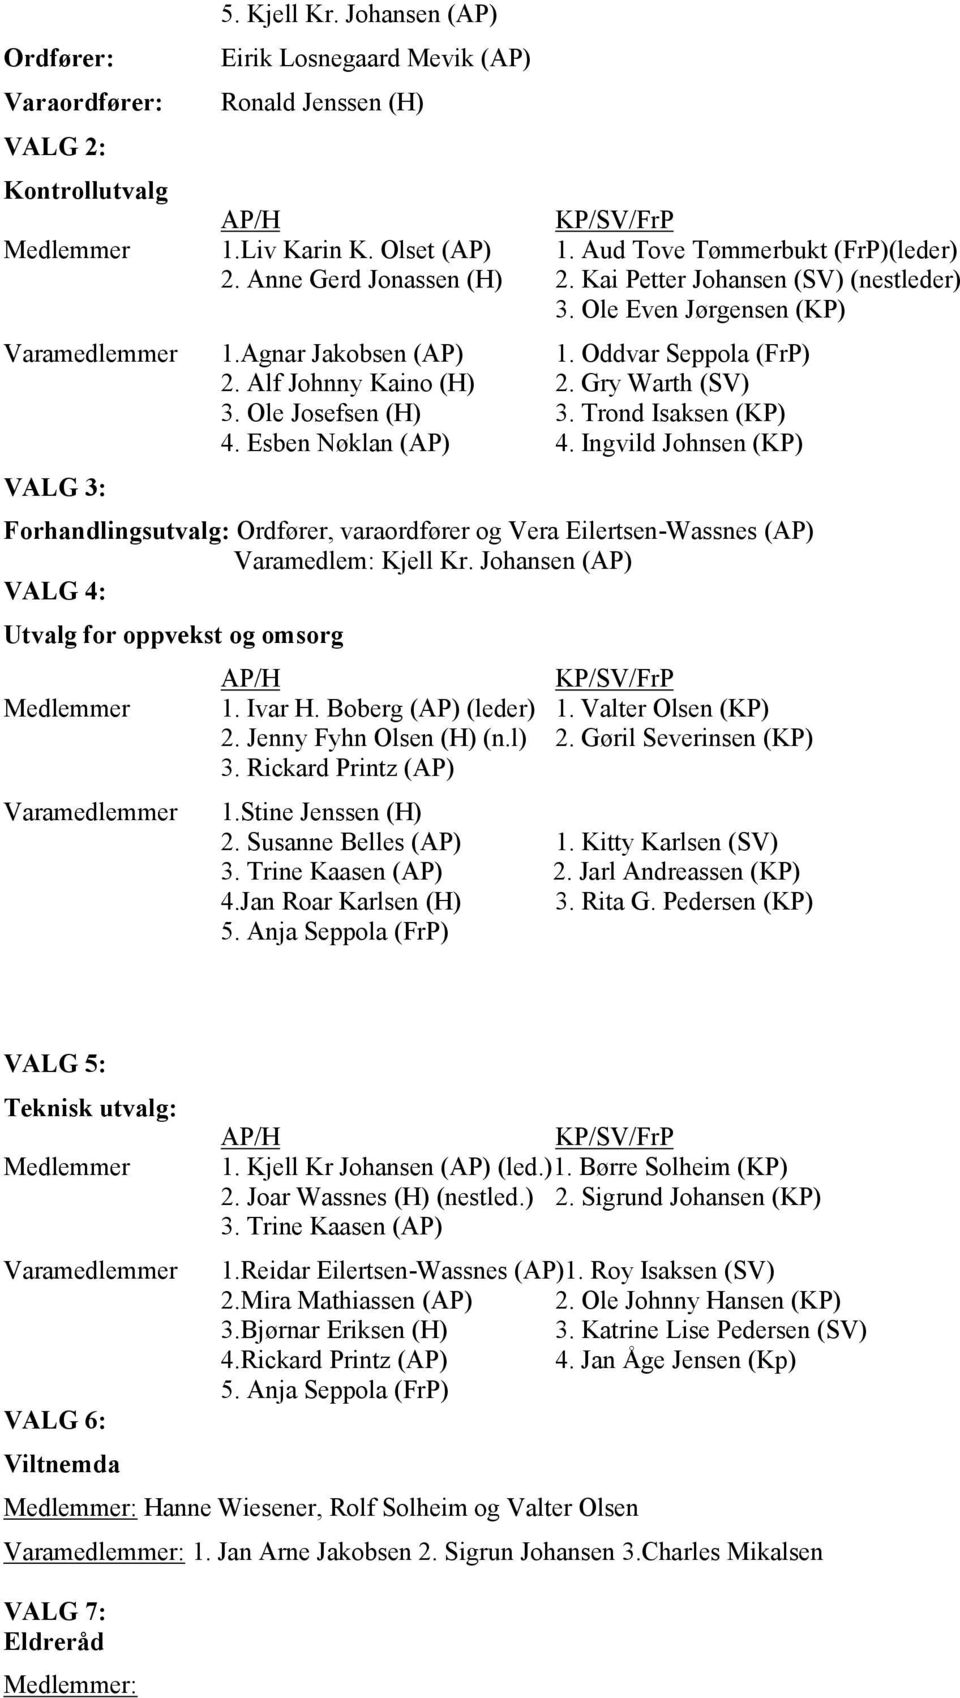 Alf Johnny Kaino (H) 2. Gry Warth (SV) 3. Ole Josefsen (H) 3. Trond Isaksen (KP) 4. Esben Nøklan (AP) 4.